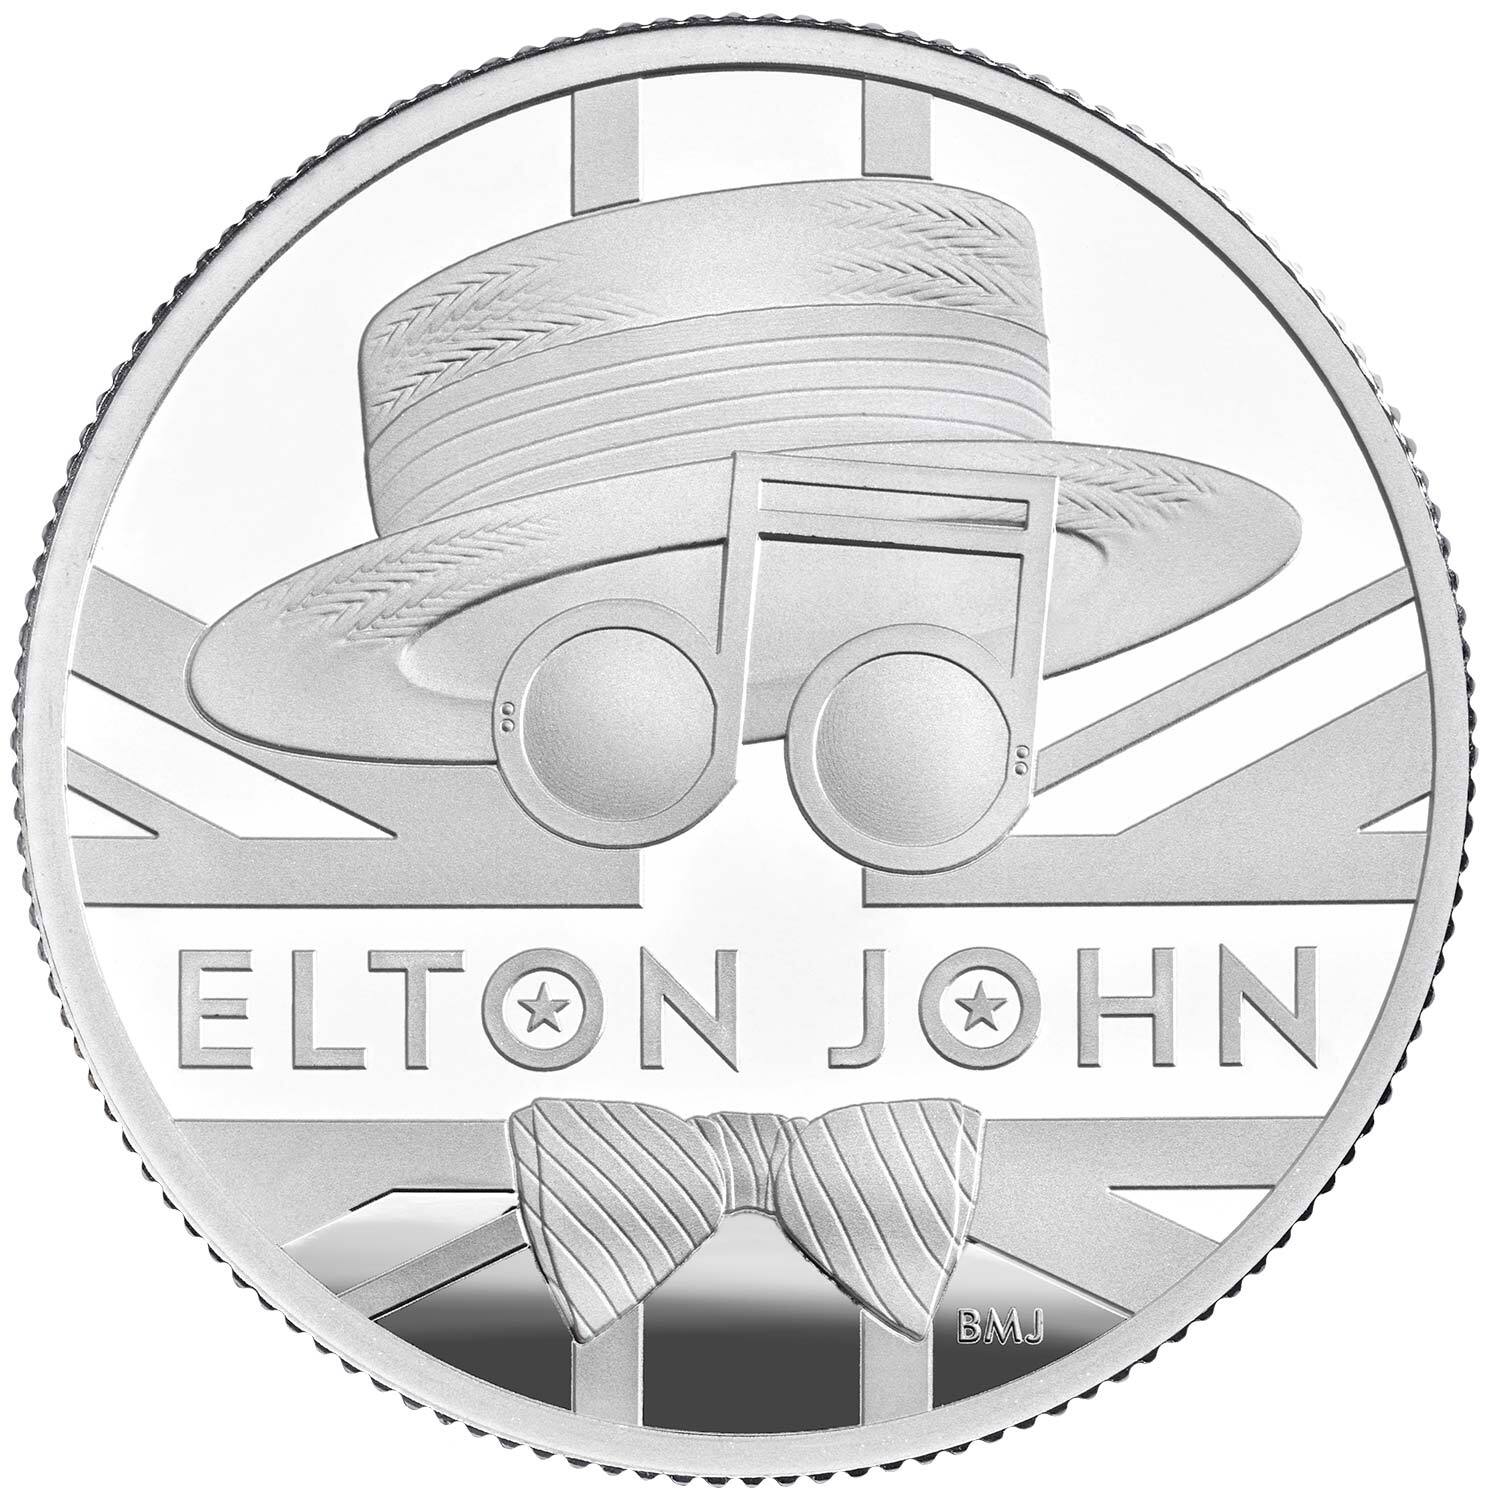 2020 £1 Elton John 1/2oz Silver Proof Coin